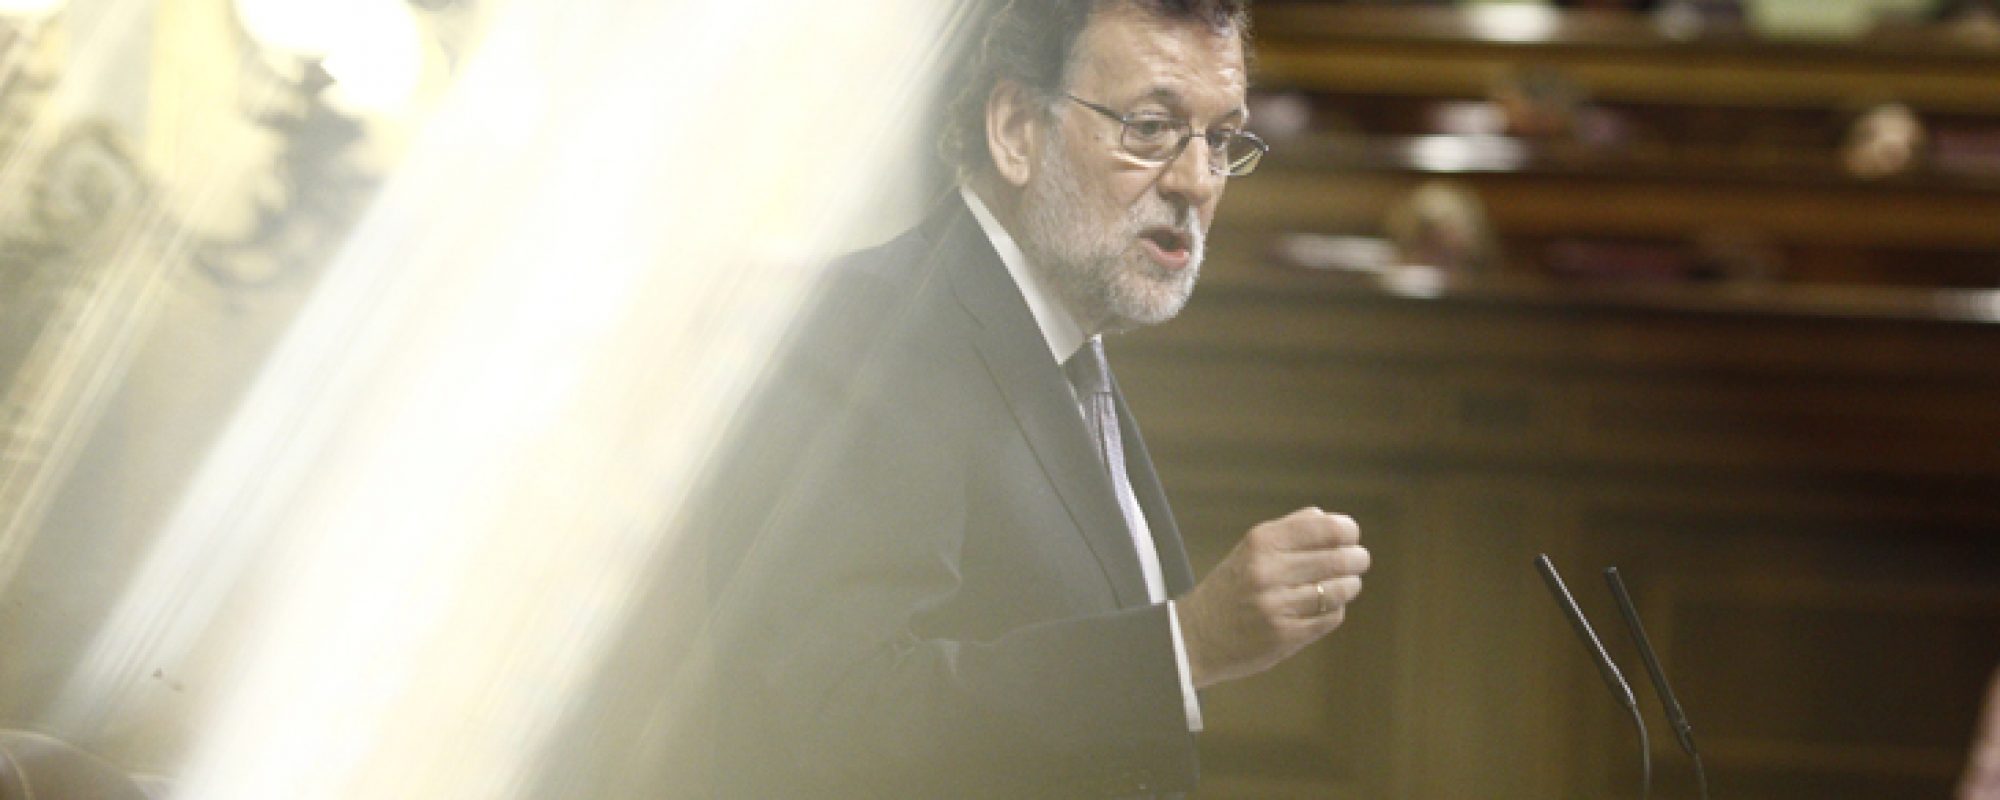 DEBATE DE INVESTIDURA DE RAJOY
Debate de investidura de Mariano Rajoy en el Congreso de los Diputados
Eduardo Parra / Europa Press
(Foto de ARCHIVO)
31/8/2016